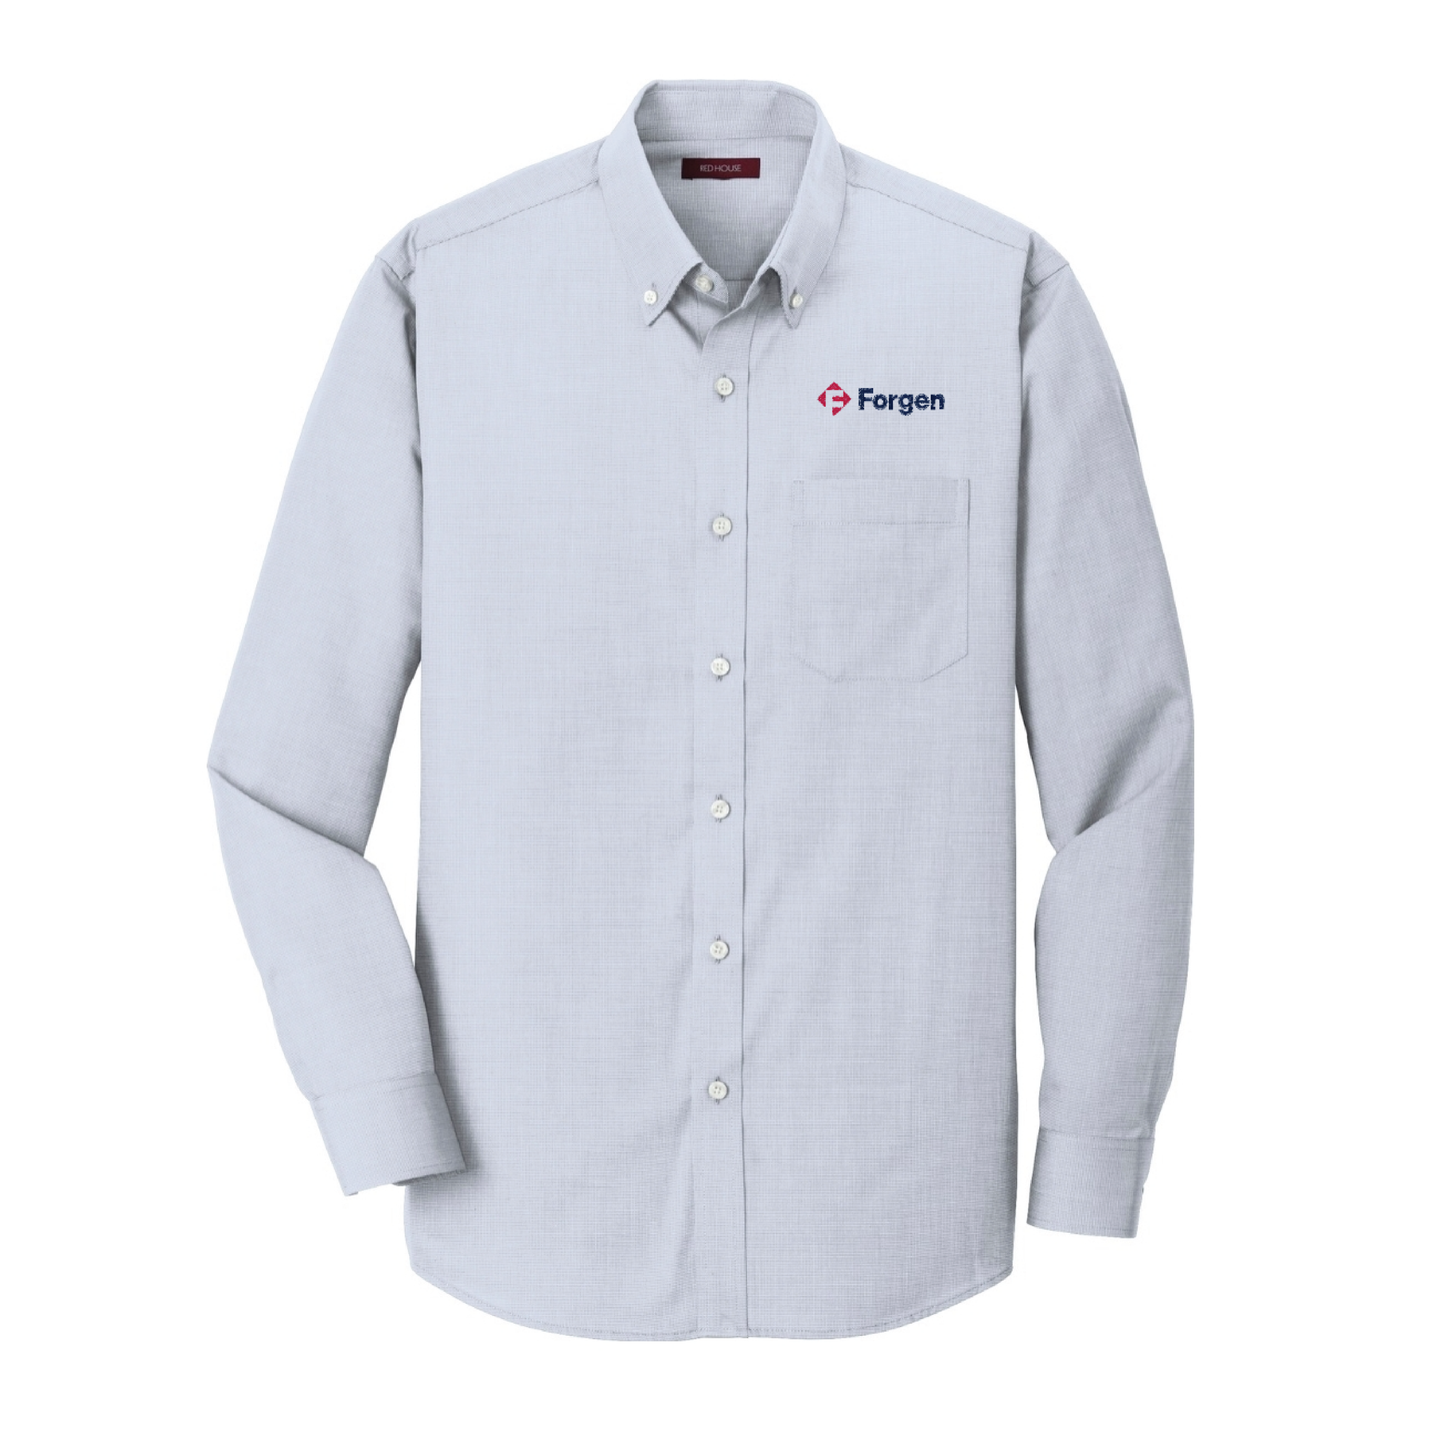 Men's Non-Iron Shirt – Forgen Merch Store